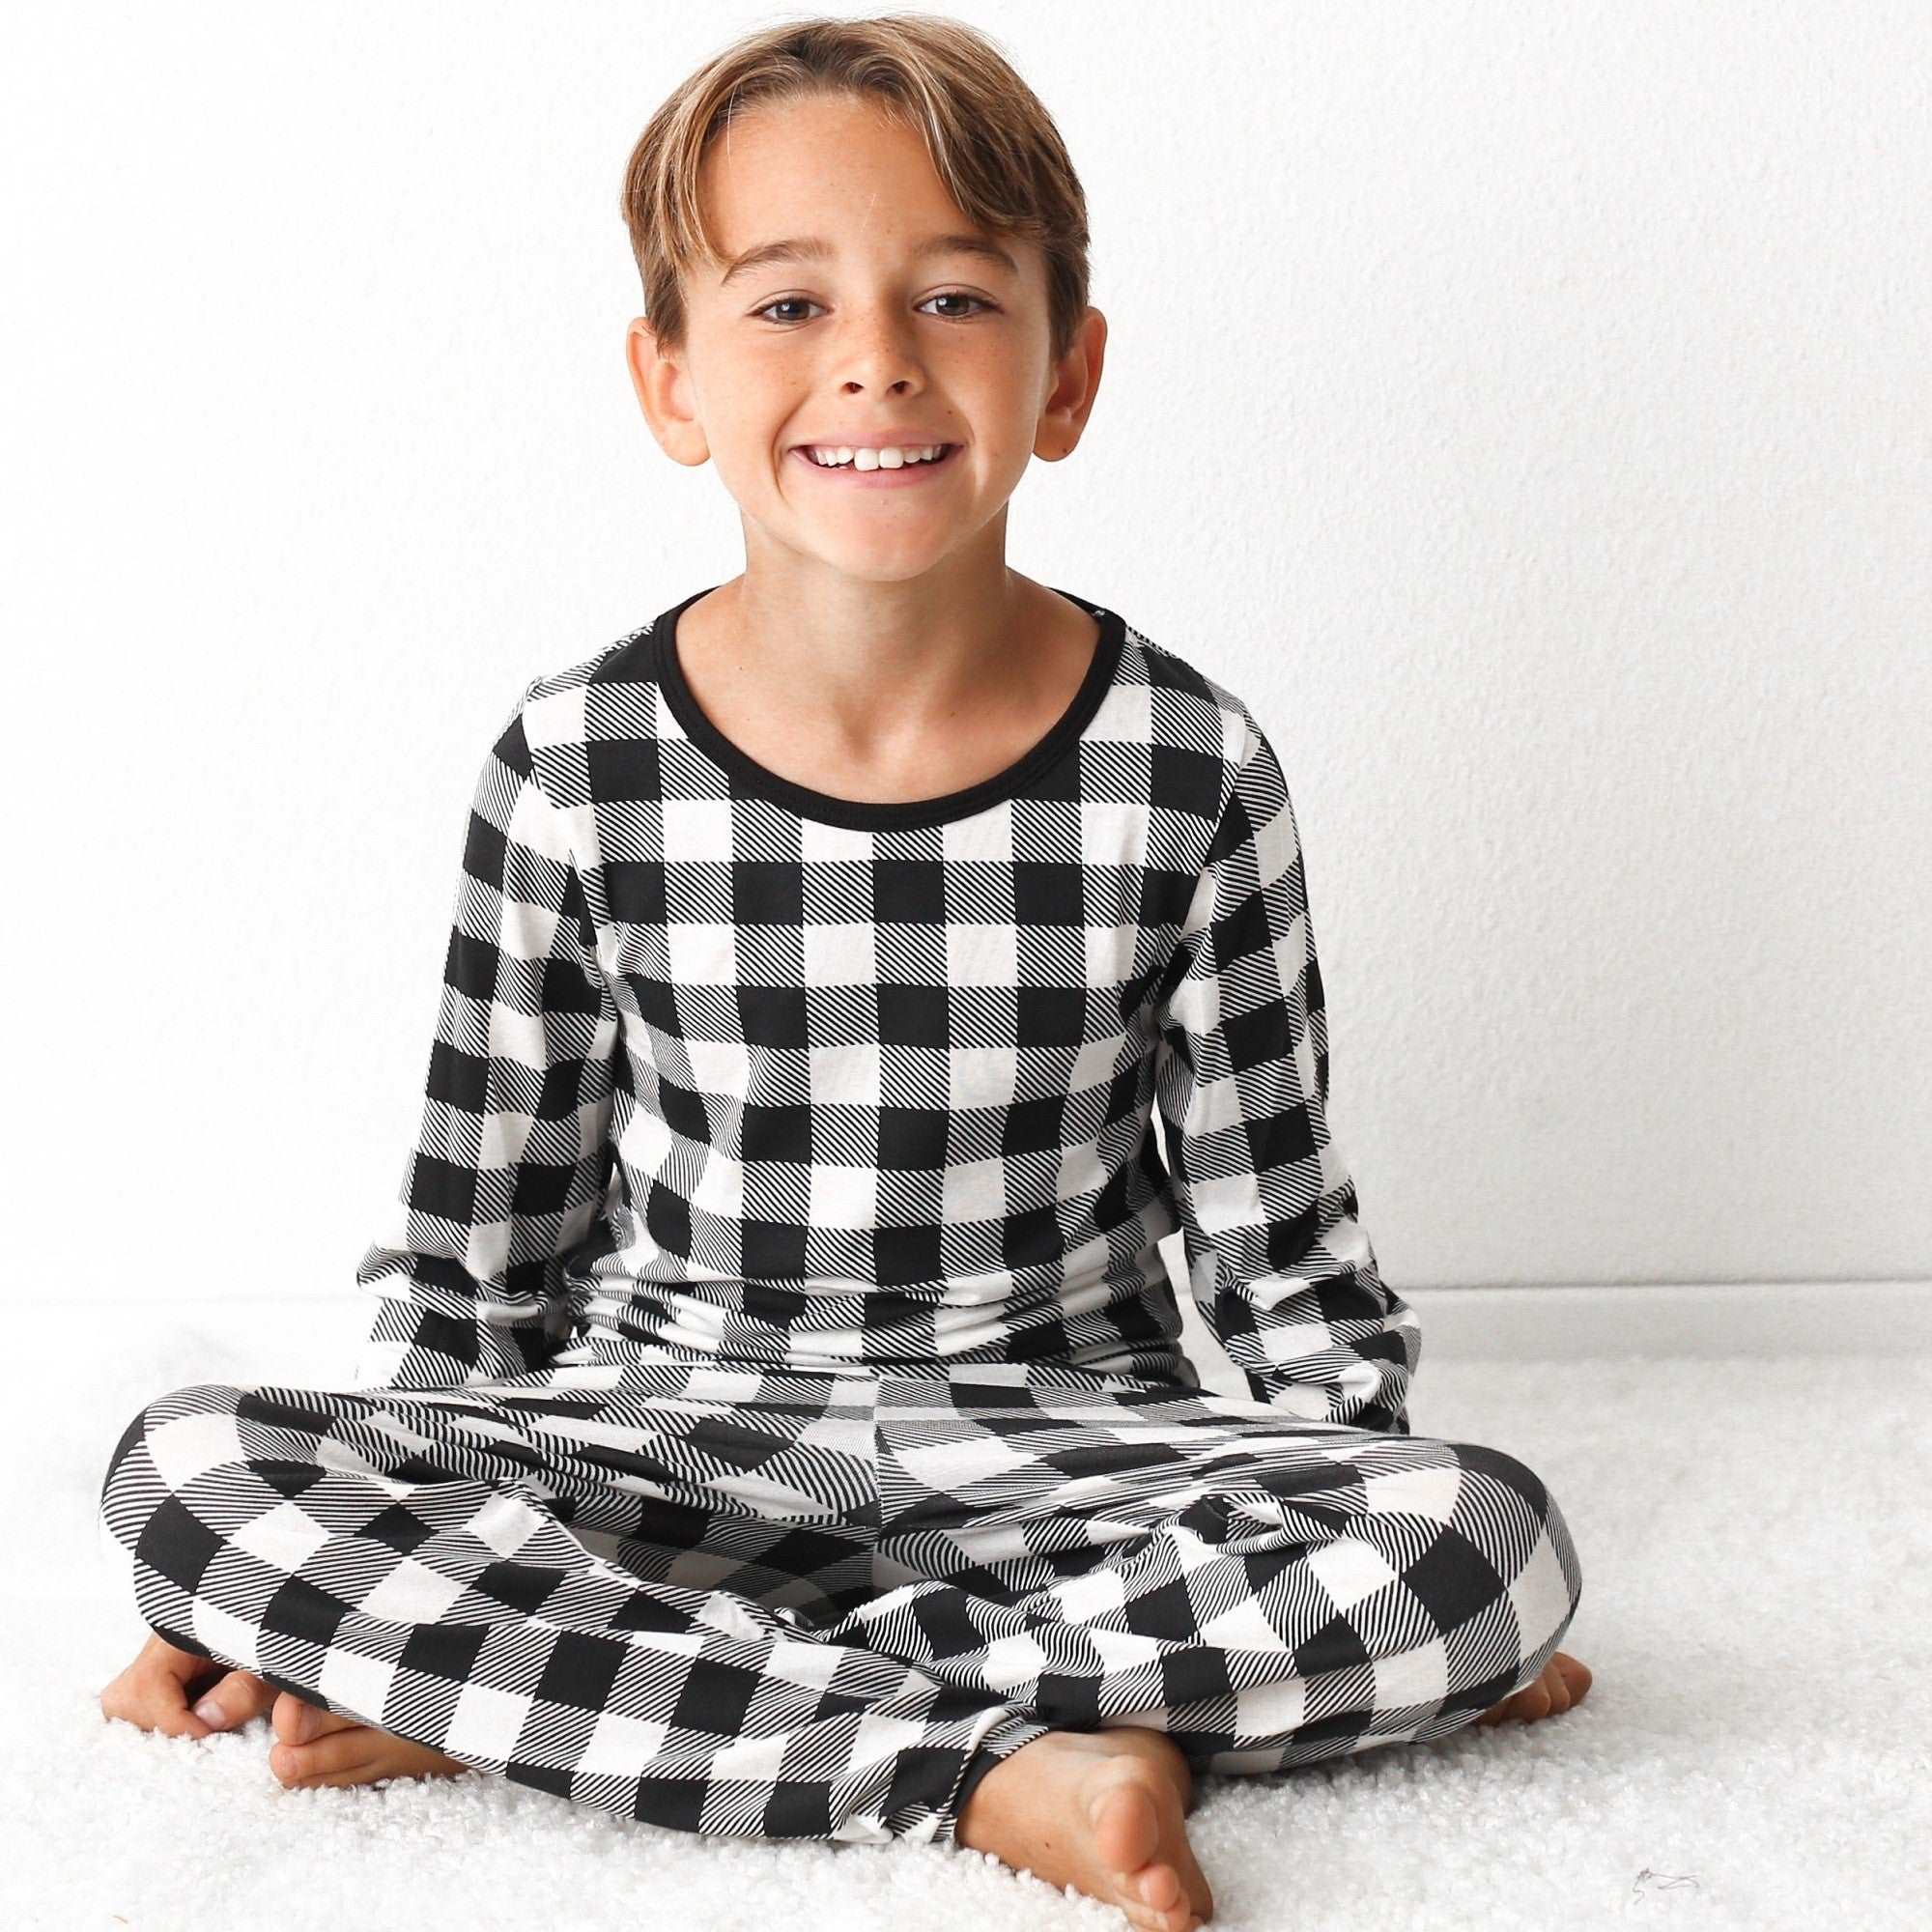 Black & White Plaid Pajama